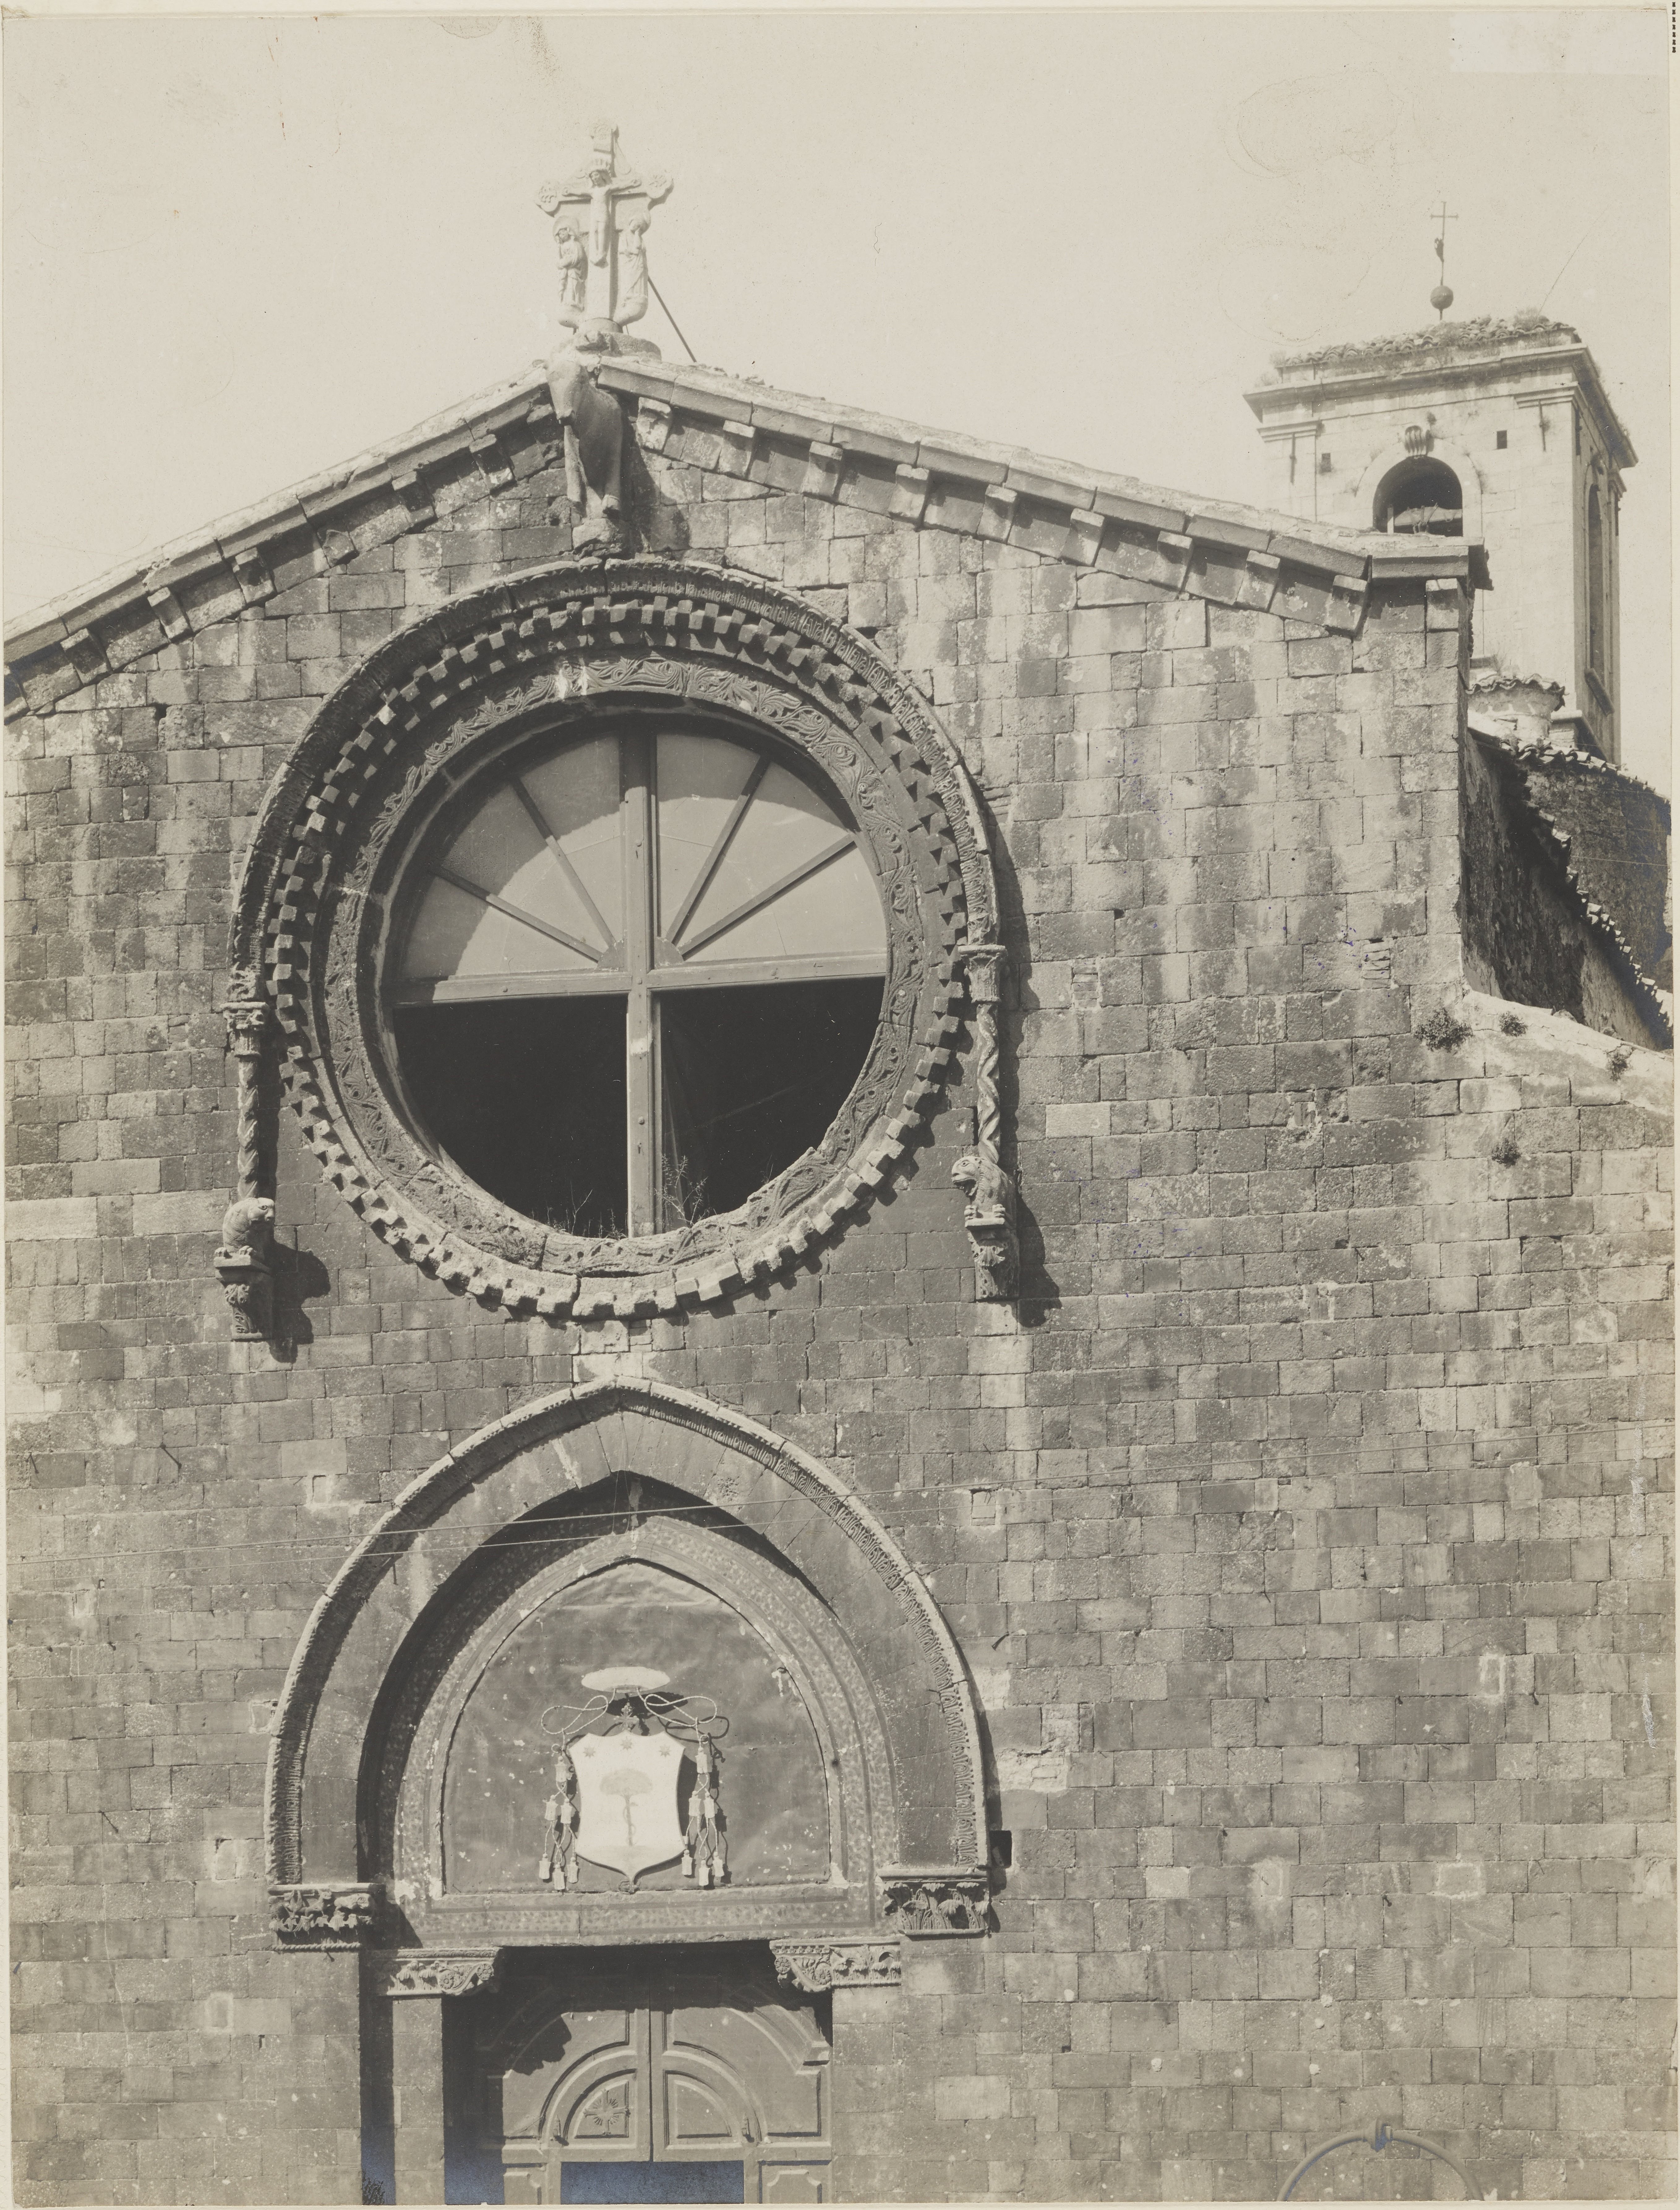 Fotografo non identificato, Bovino - Chiesa di S. Maria assunta, facciata - particolare, 1891-1910, gelatina ai sali d'argento, MPI141088